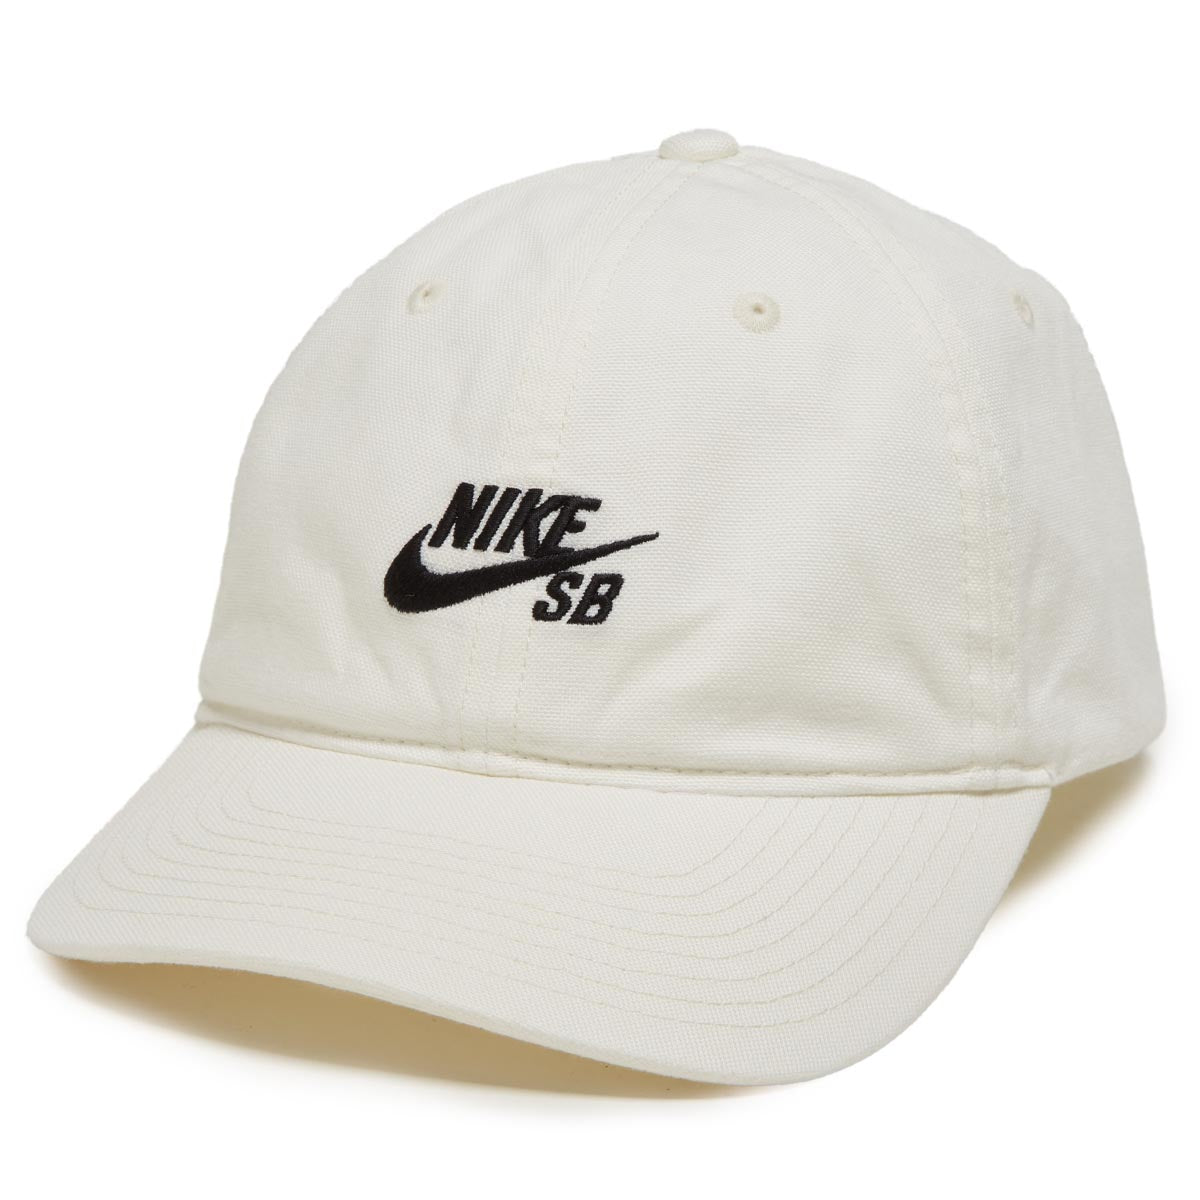 Nike SB Club Hat - Sail/Black image 1